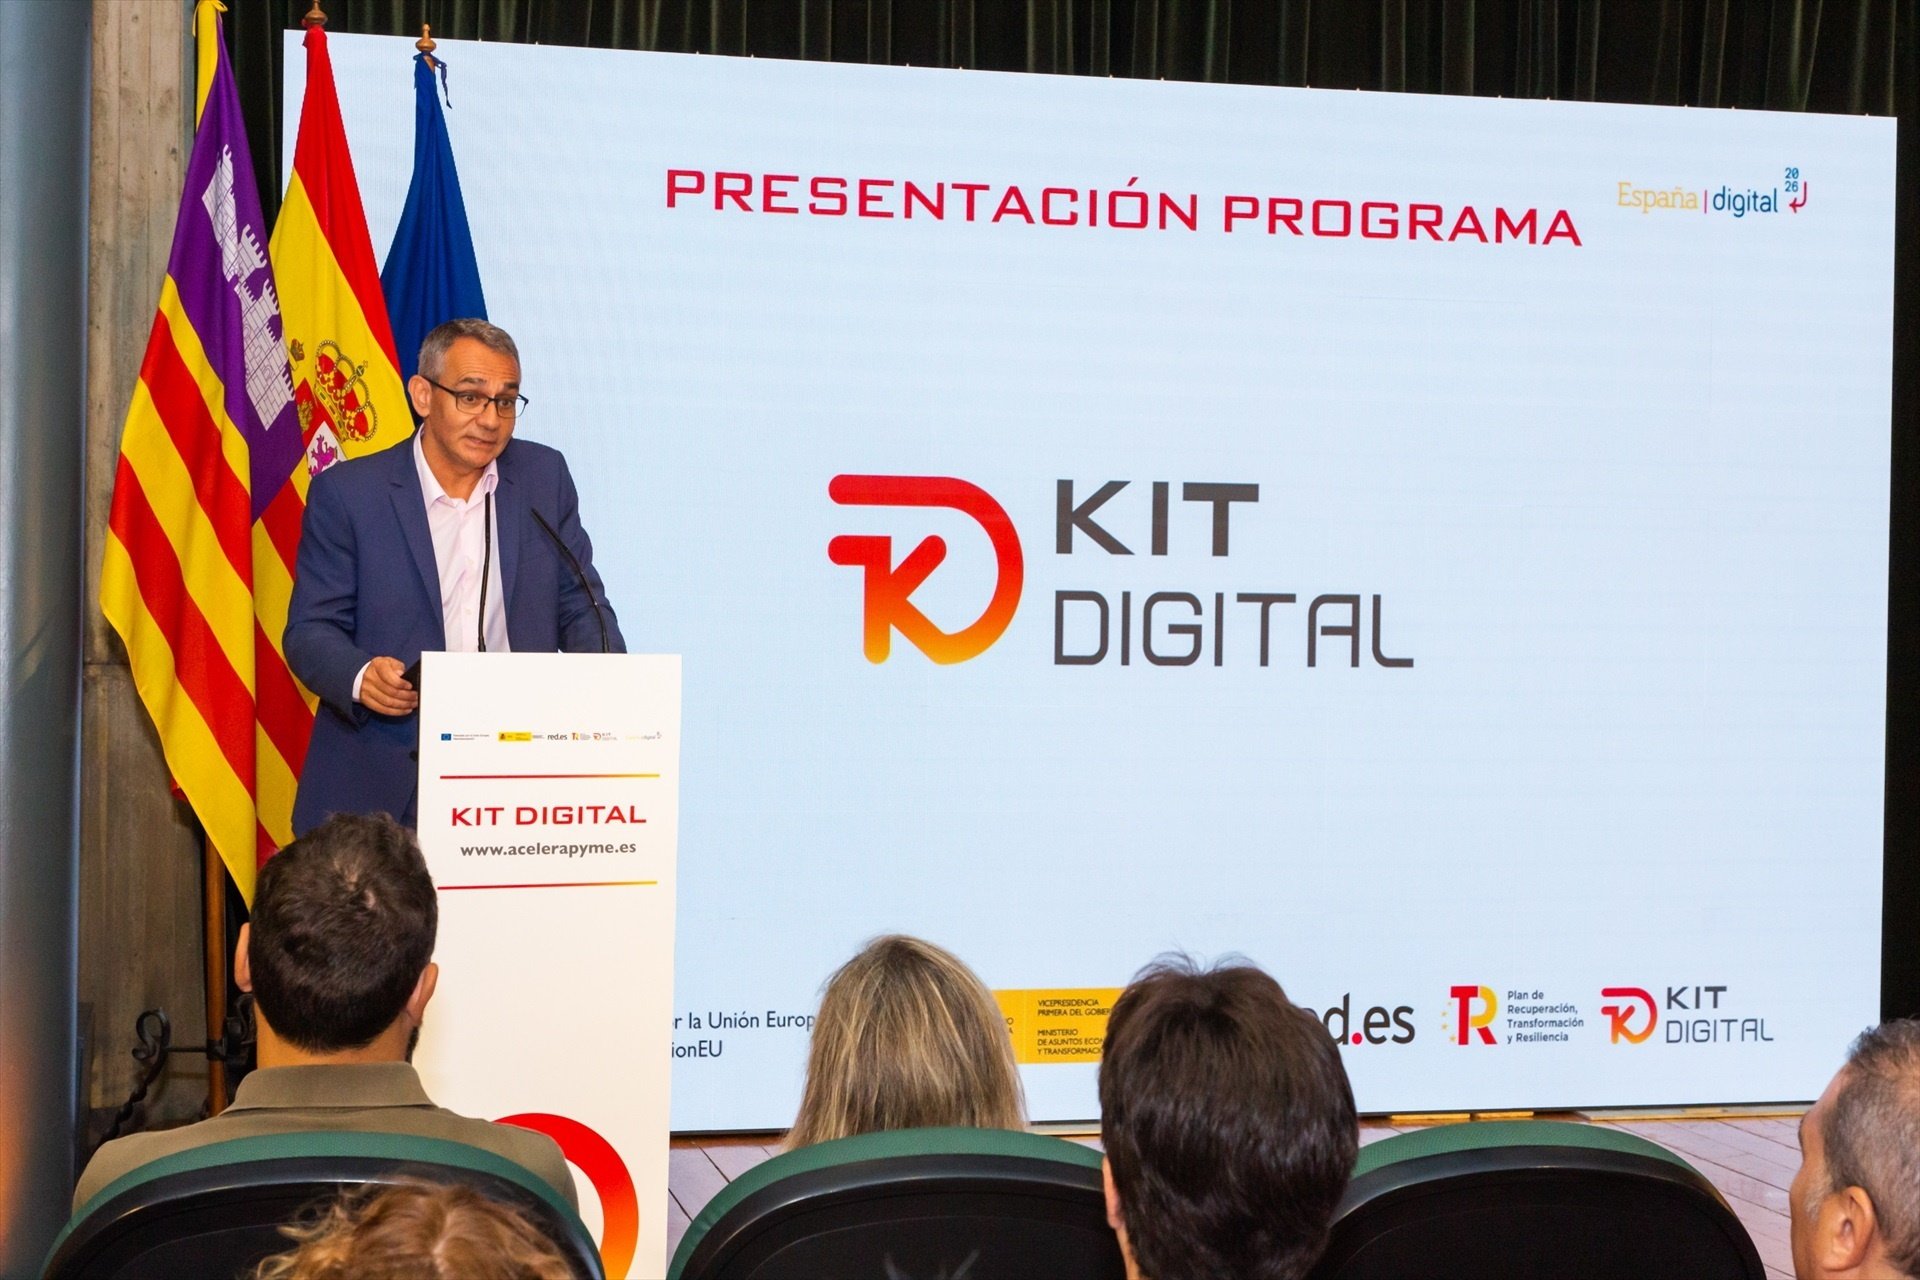 El Kit Digital ha mobilitzat 416 milions d'euros fins al novembre